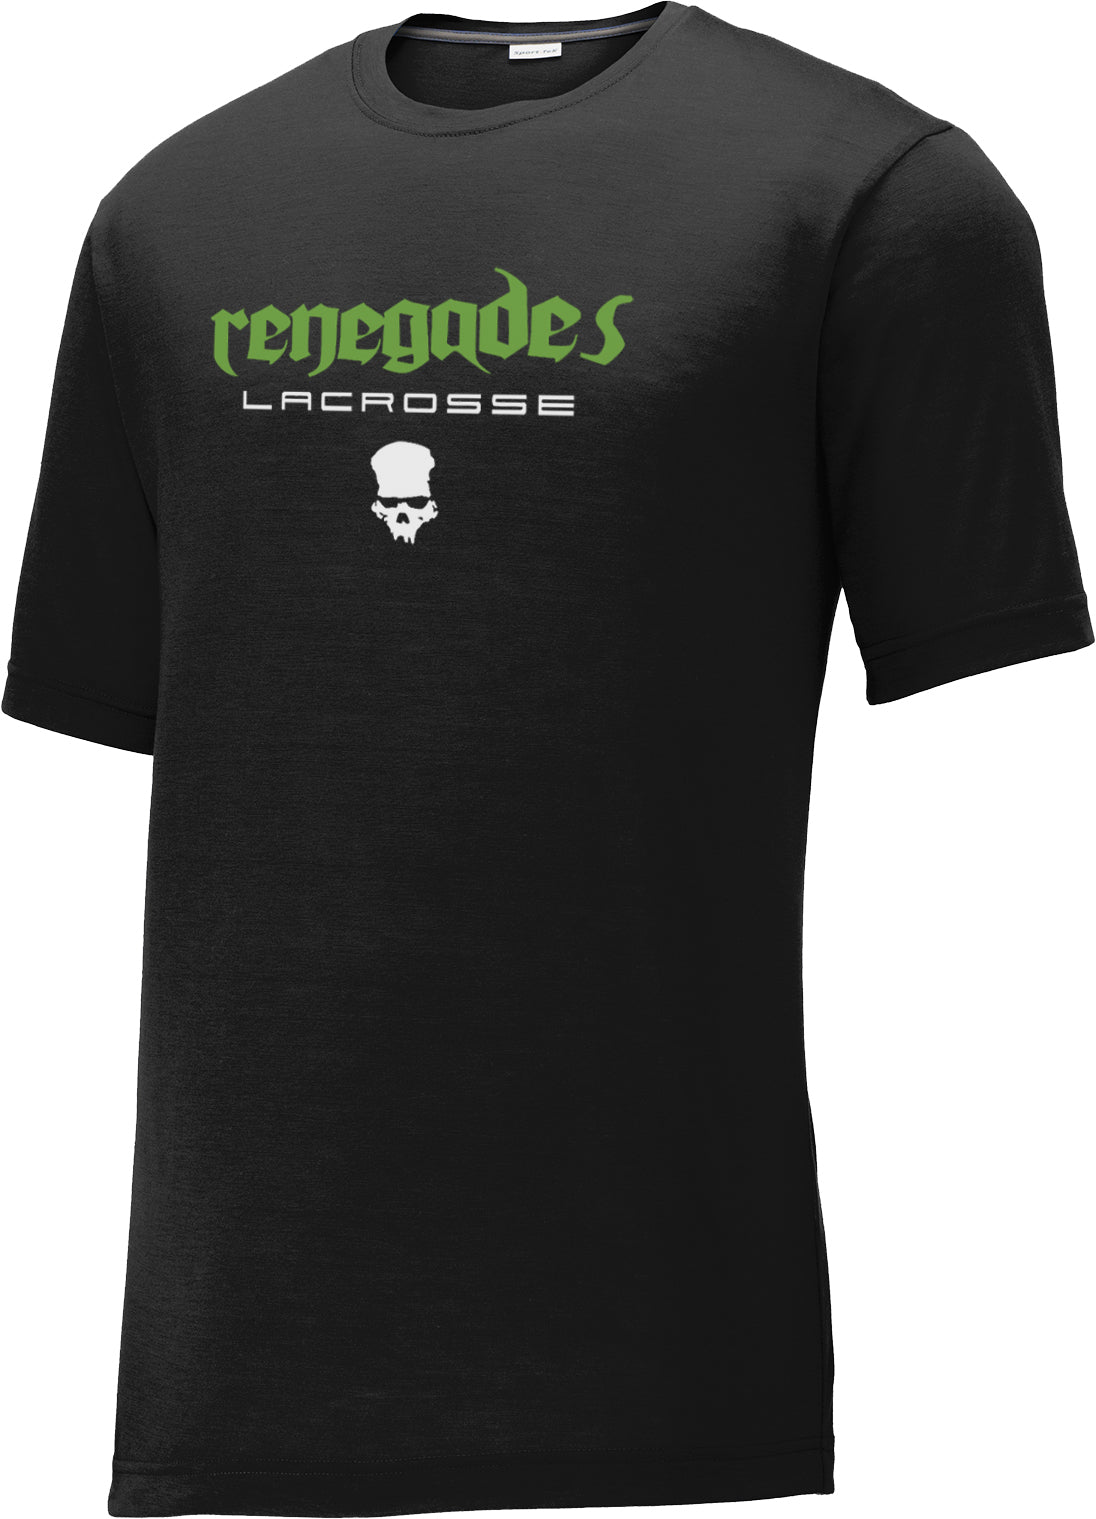 Renegades Lacrosse Black CottonTouch Performance T-Shirt